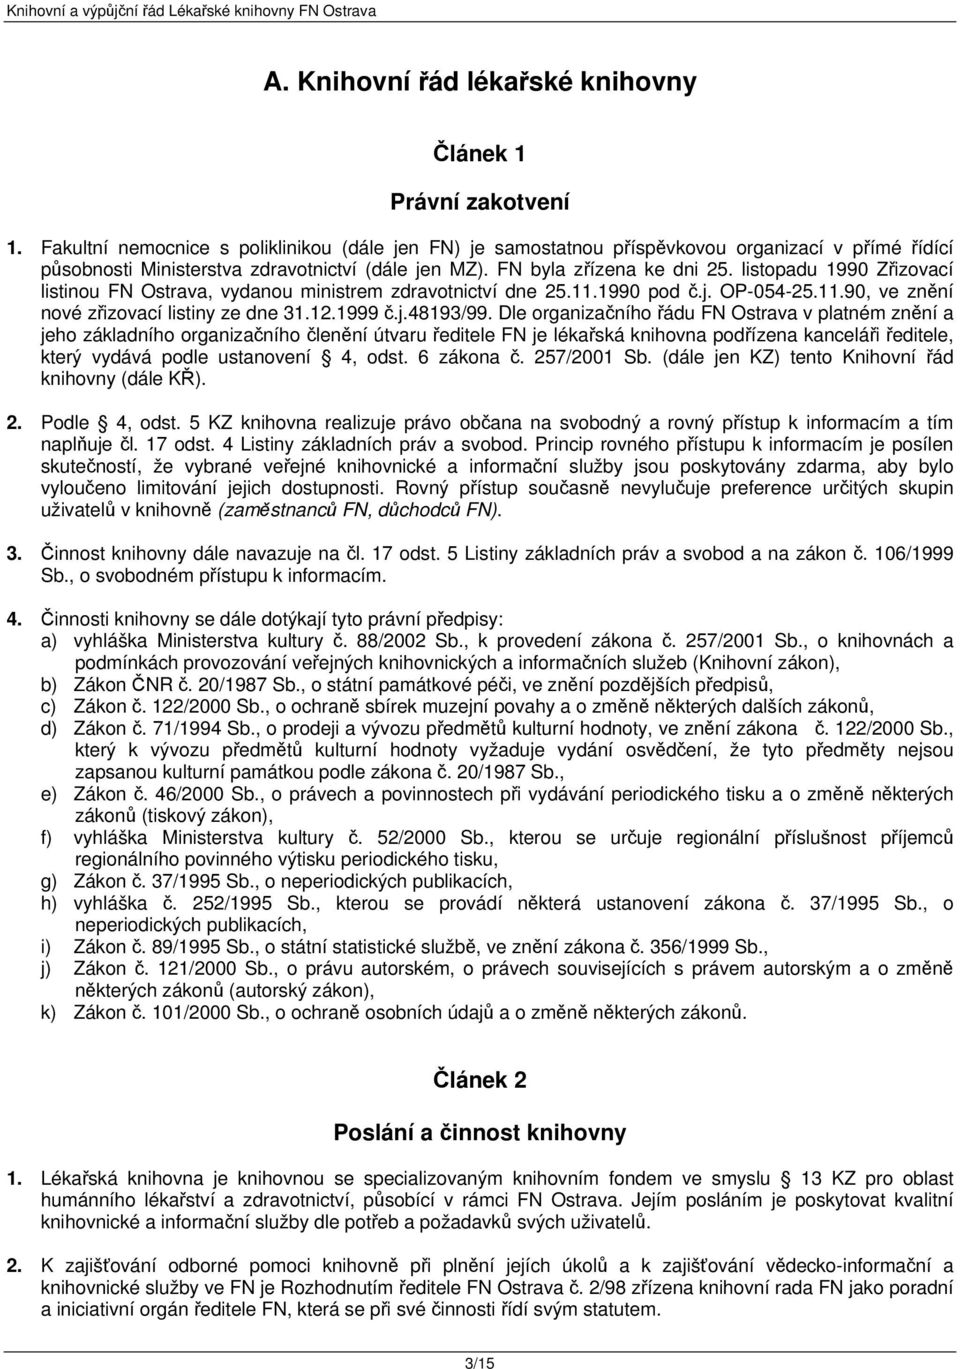 listopadu 1990 Zřizovací listinou FN Ostrava, vydanou ministrem zdravotnictví dne 25.11.1990 pod č.j. OP-054-25.11.90, ve znění nové zřizovací listiny ze dne 31.12.1999 č.j.48193/99.